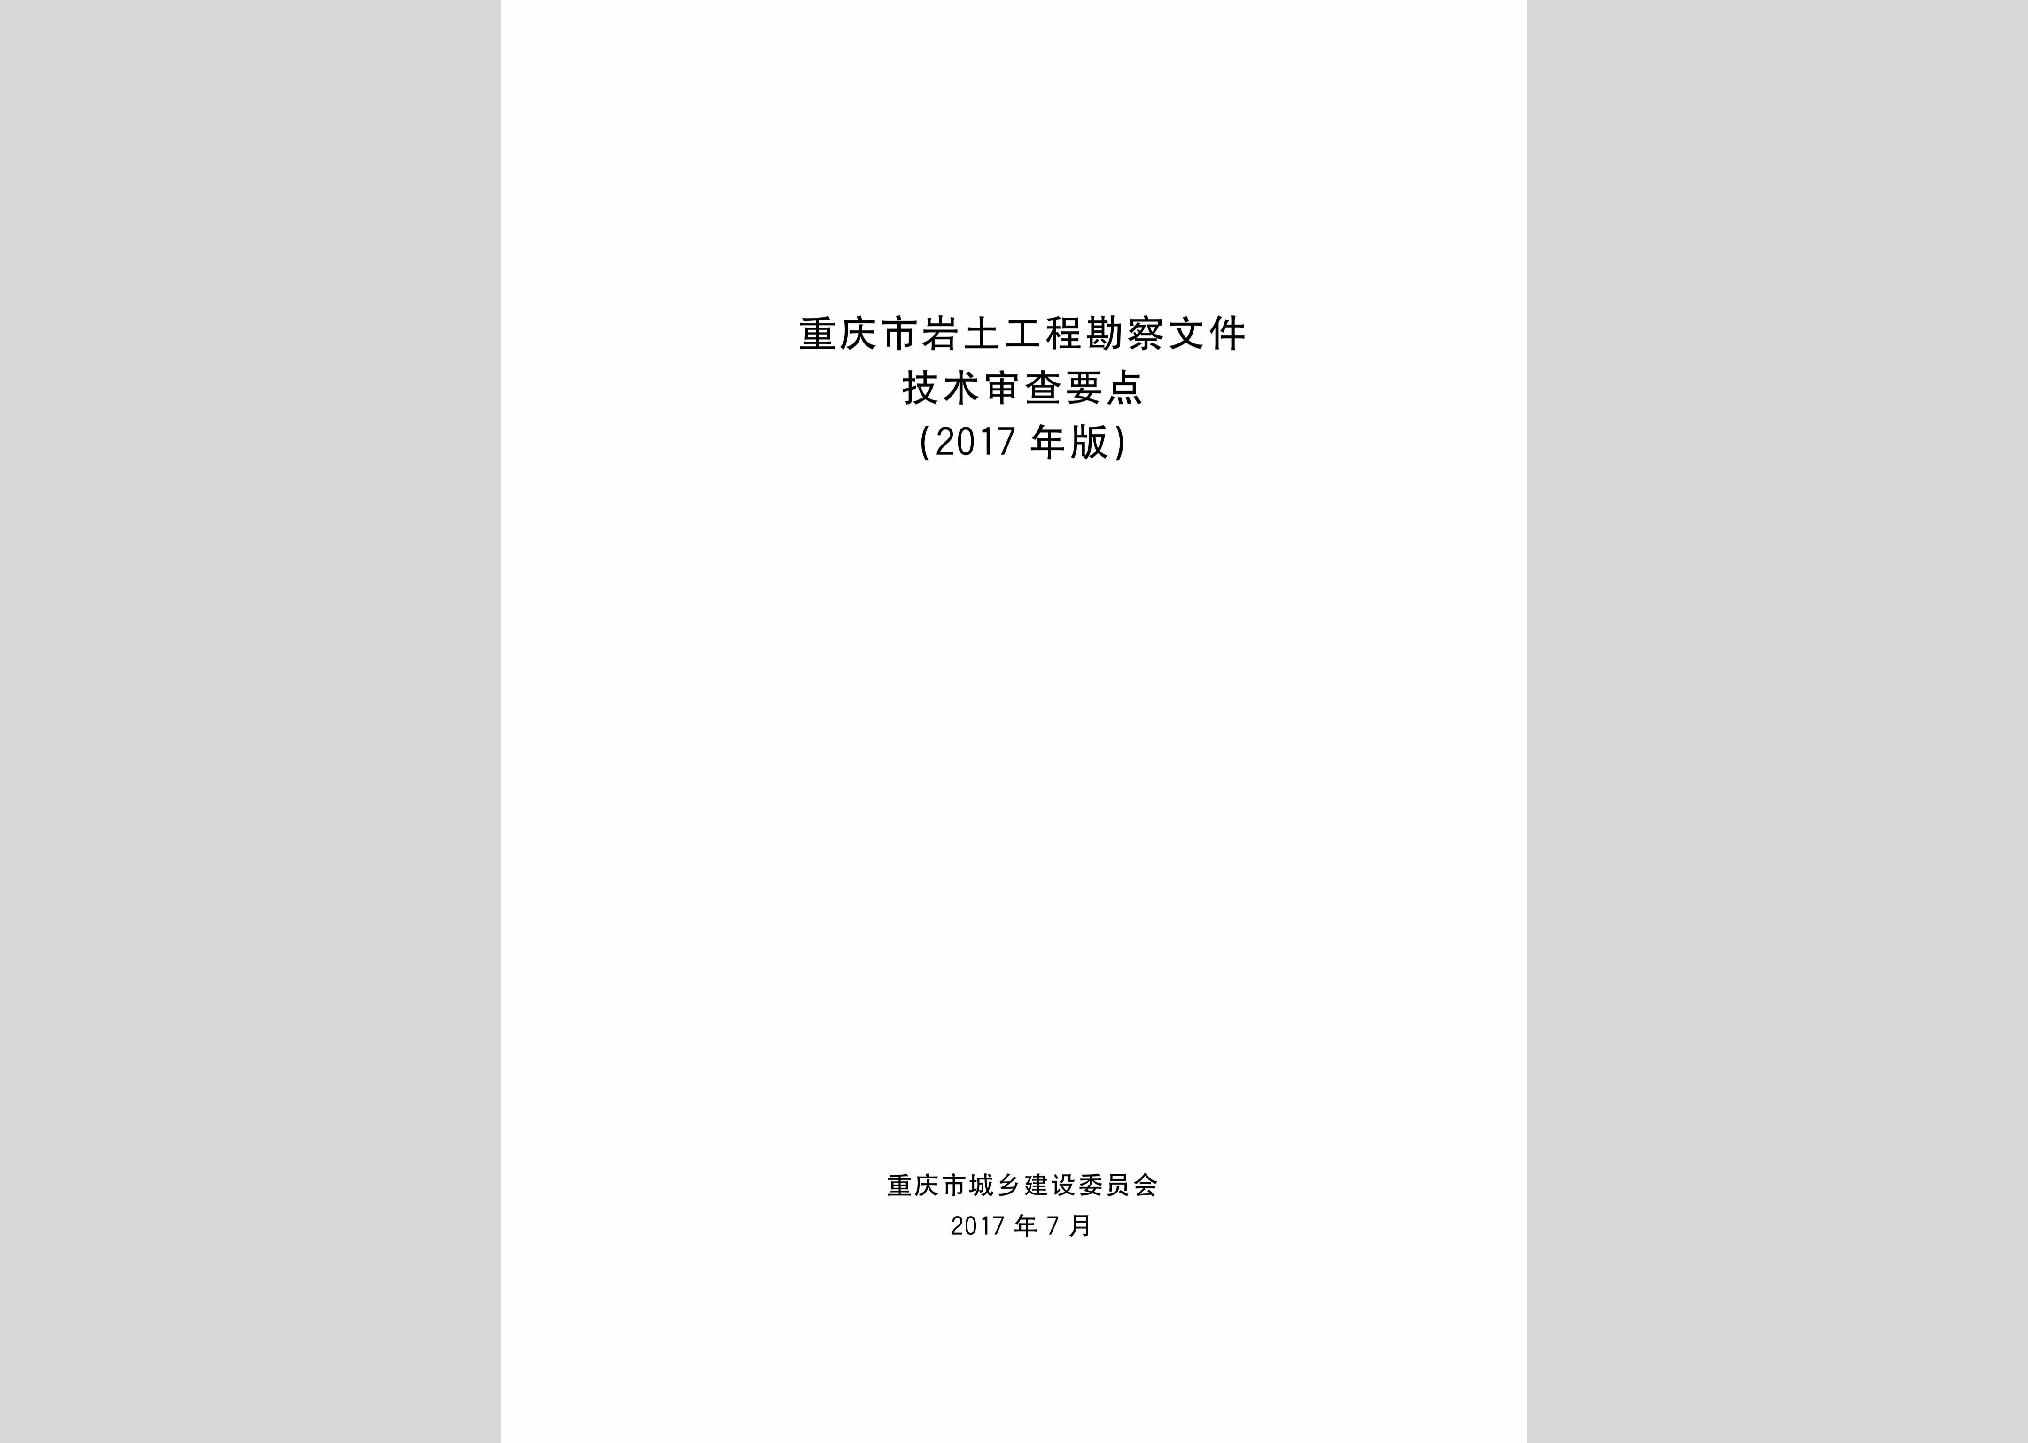 YTKCSCYD：重庆市岩土工程勘察文件技术审查要点(2017年版)